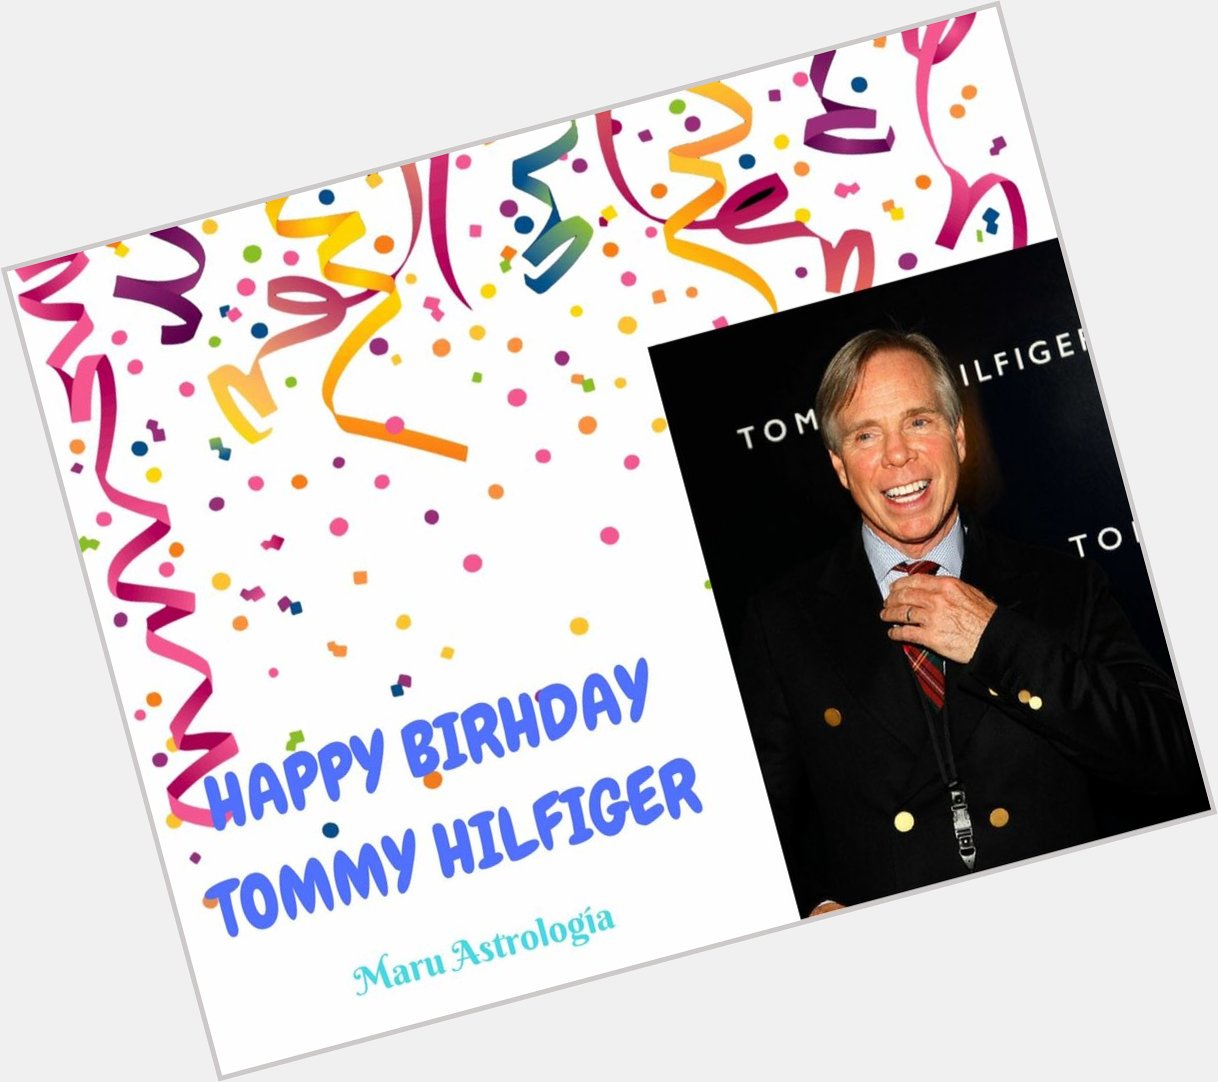 HAPPY BIRTHDAY TOMMY HILFIGER!!!!   